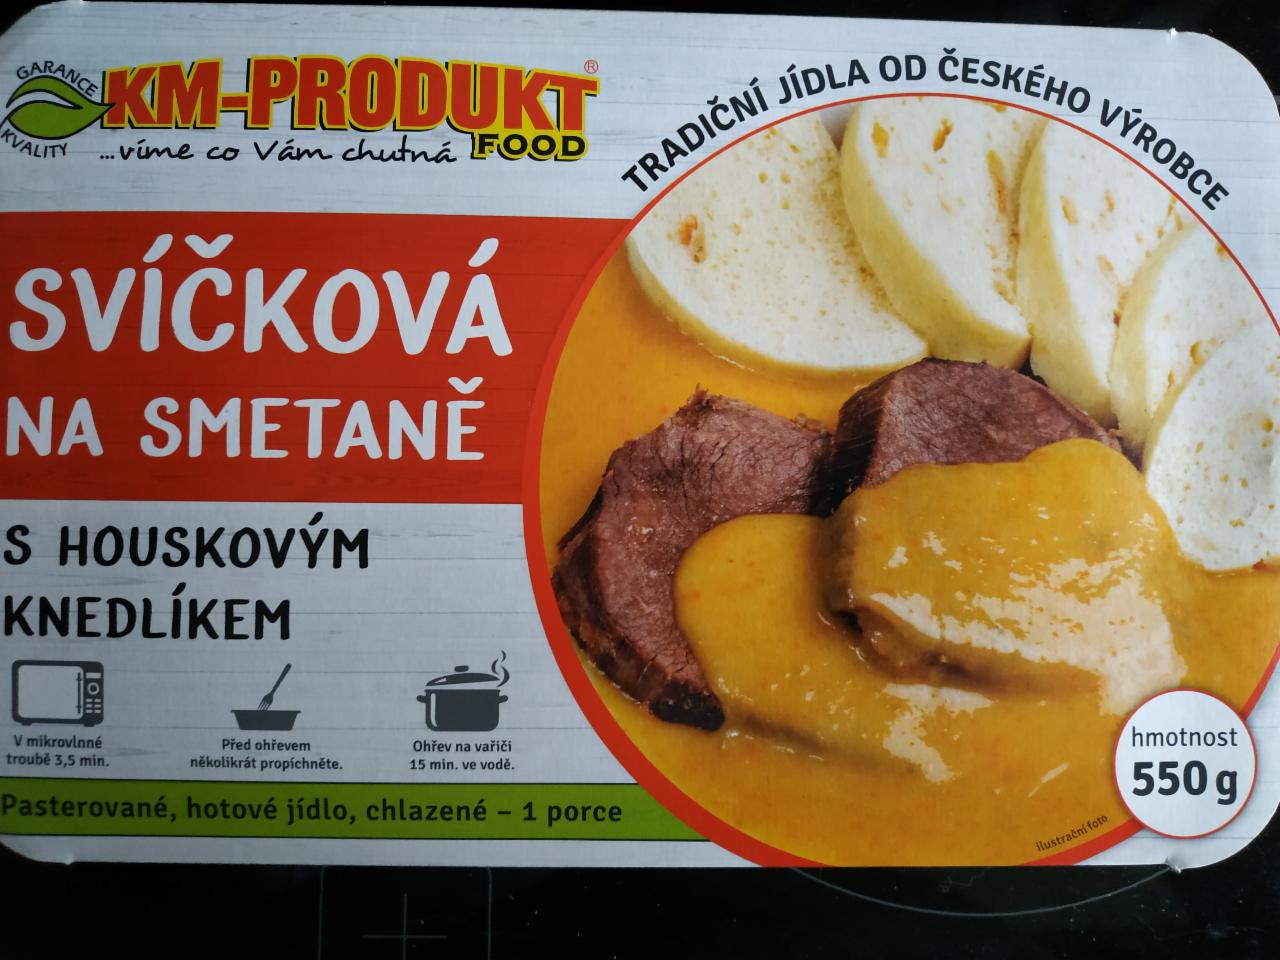 Fotografie - Svíčková na smetaně, houskový knedlík KM-Produkt